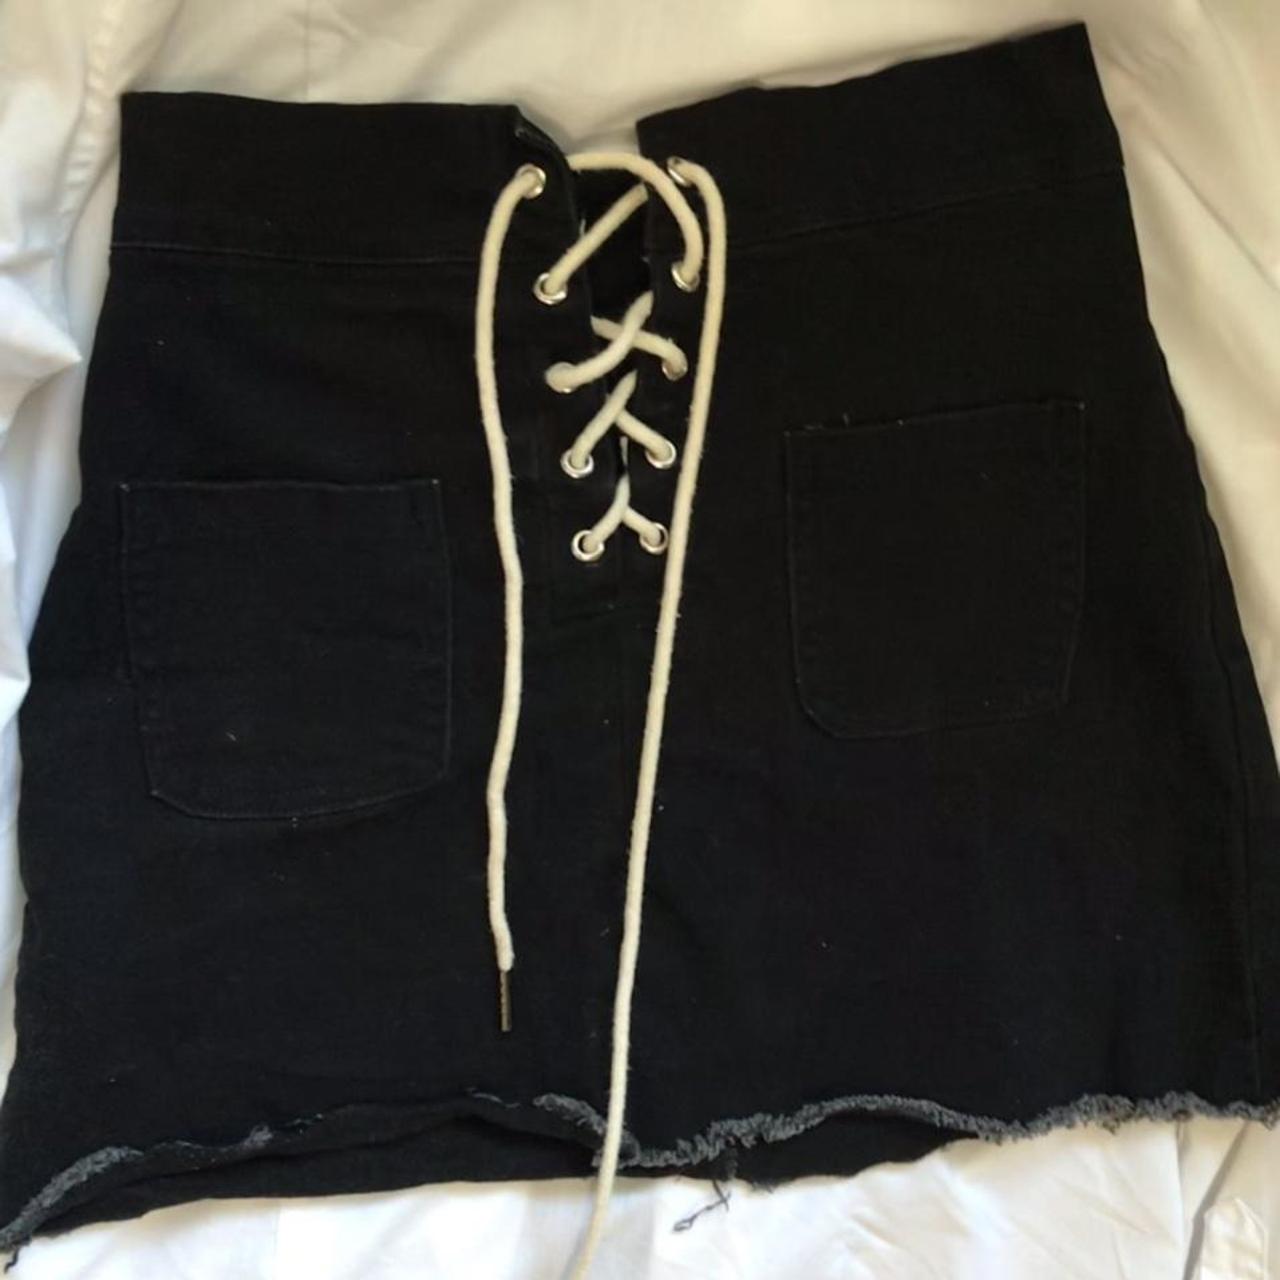 Product Image 1 - Black denim skirt
Size 24” waistband,